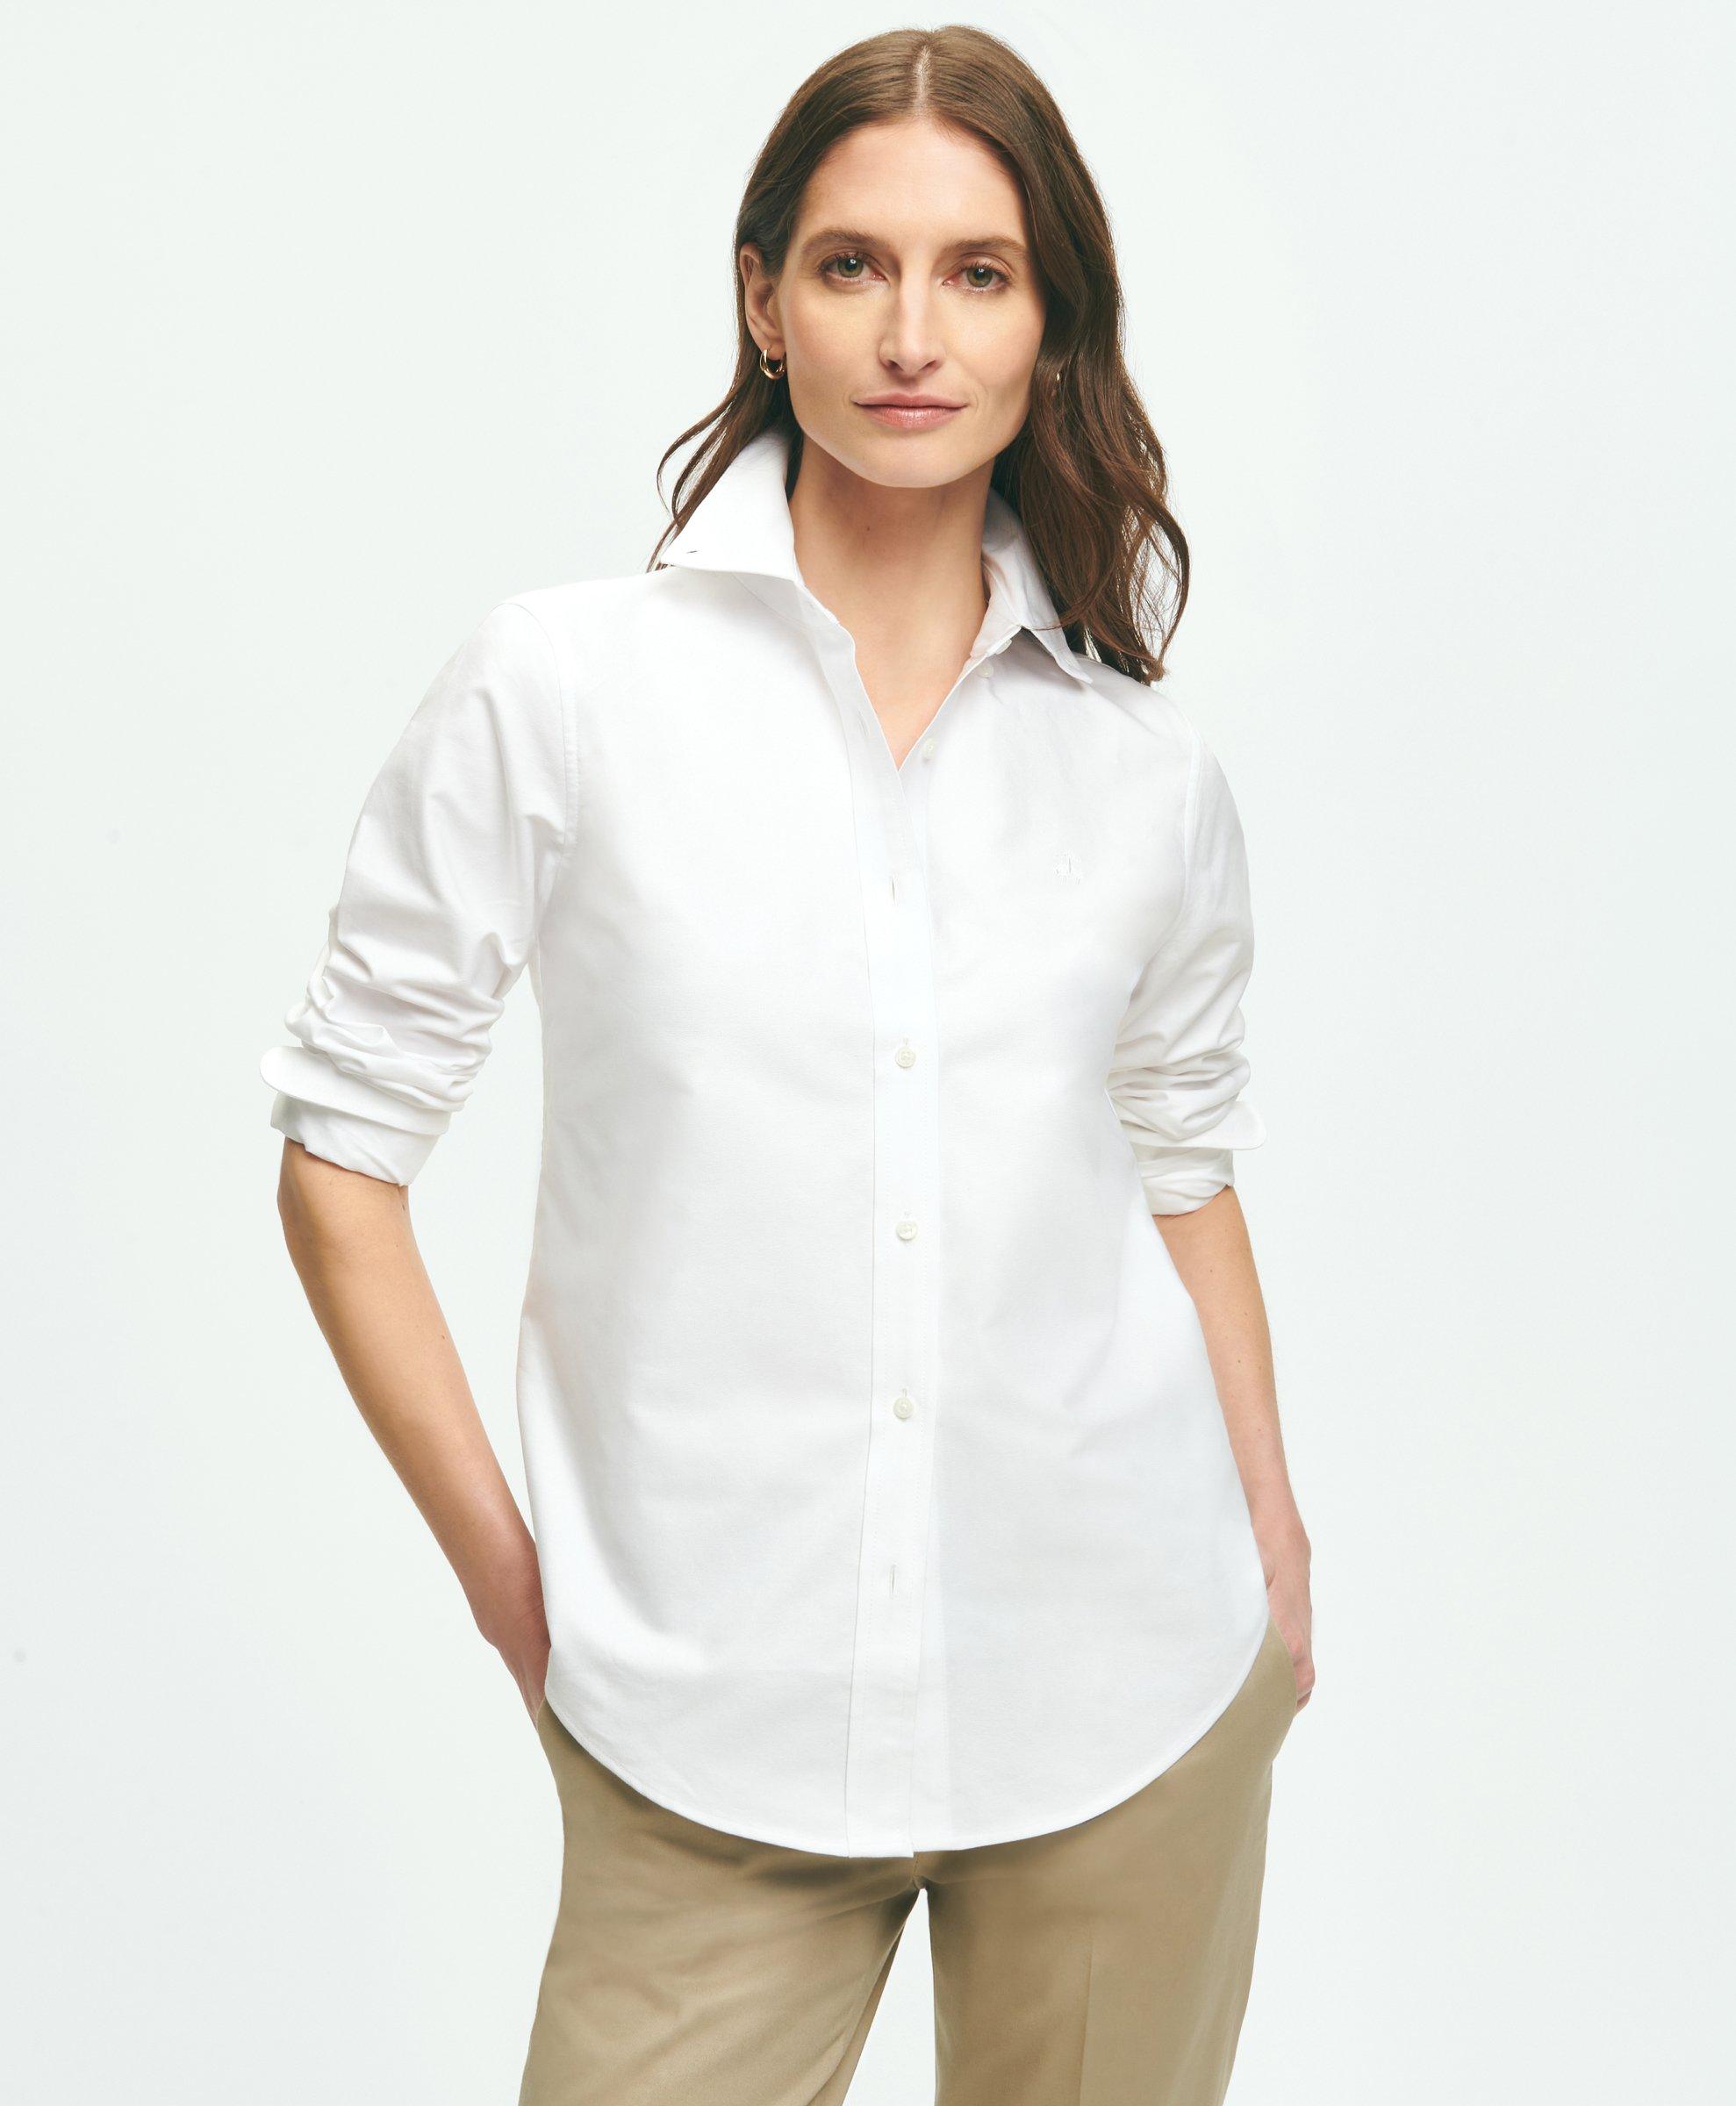 Pastel Monogram Pajama Shirt - Women - Ready-to-Wear